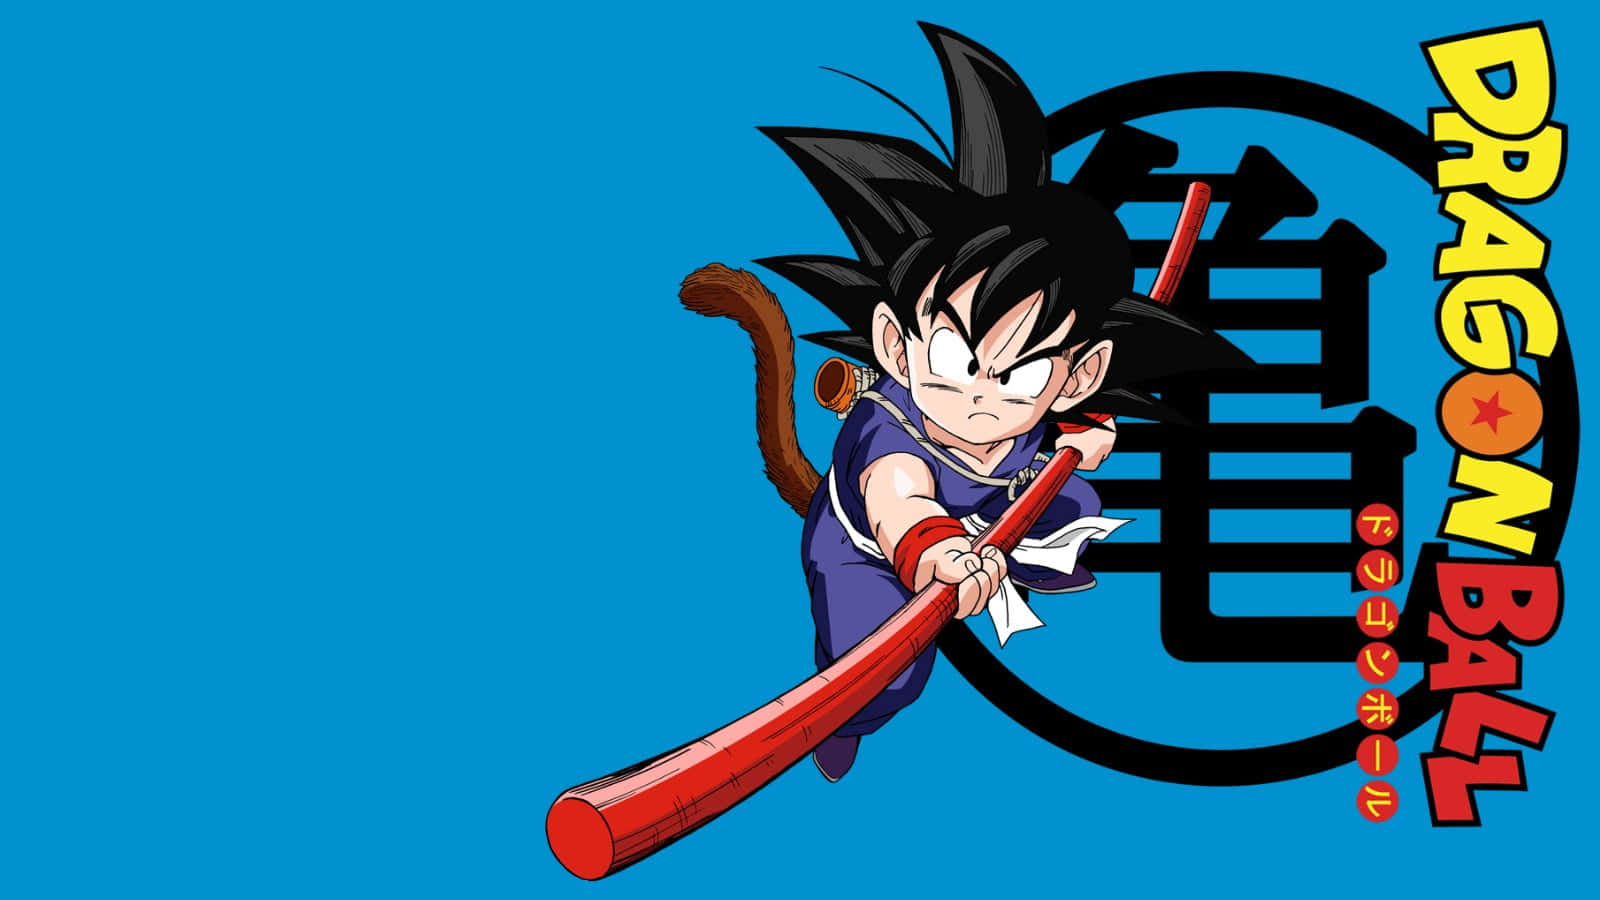 Derjunge Goku Auf Einer Mission, Um Die Welt Zu Retten! Wallpaper